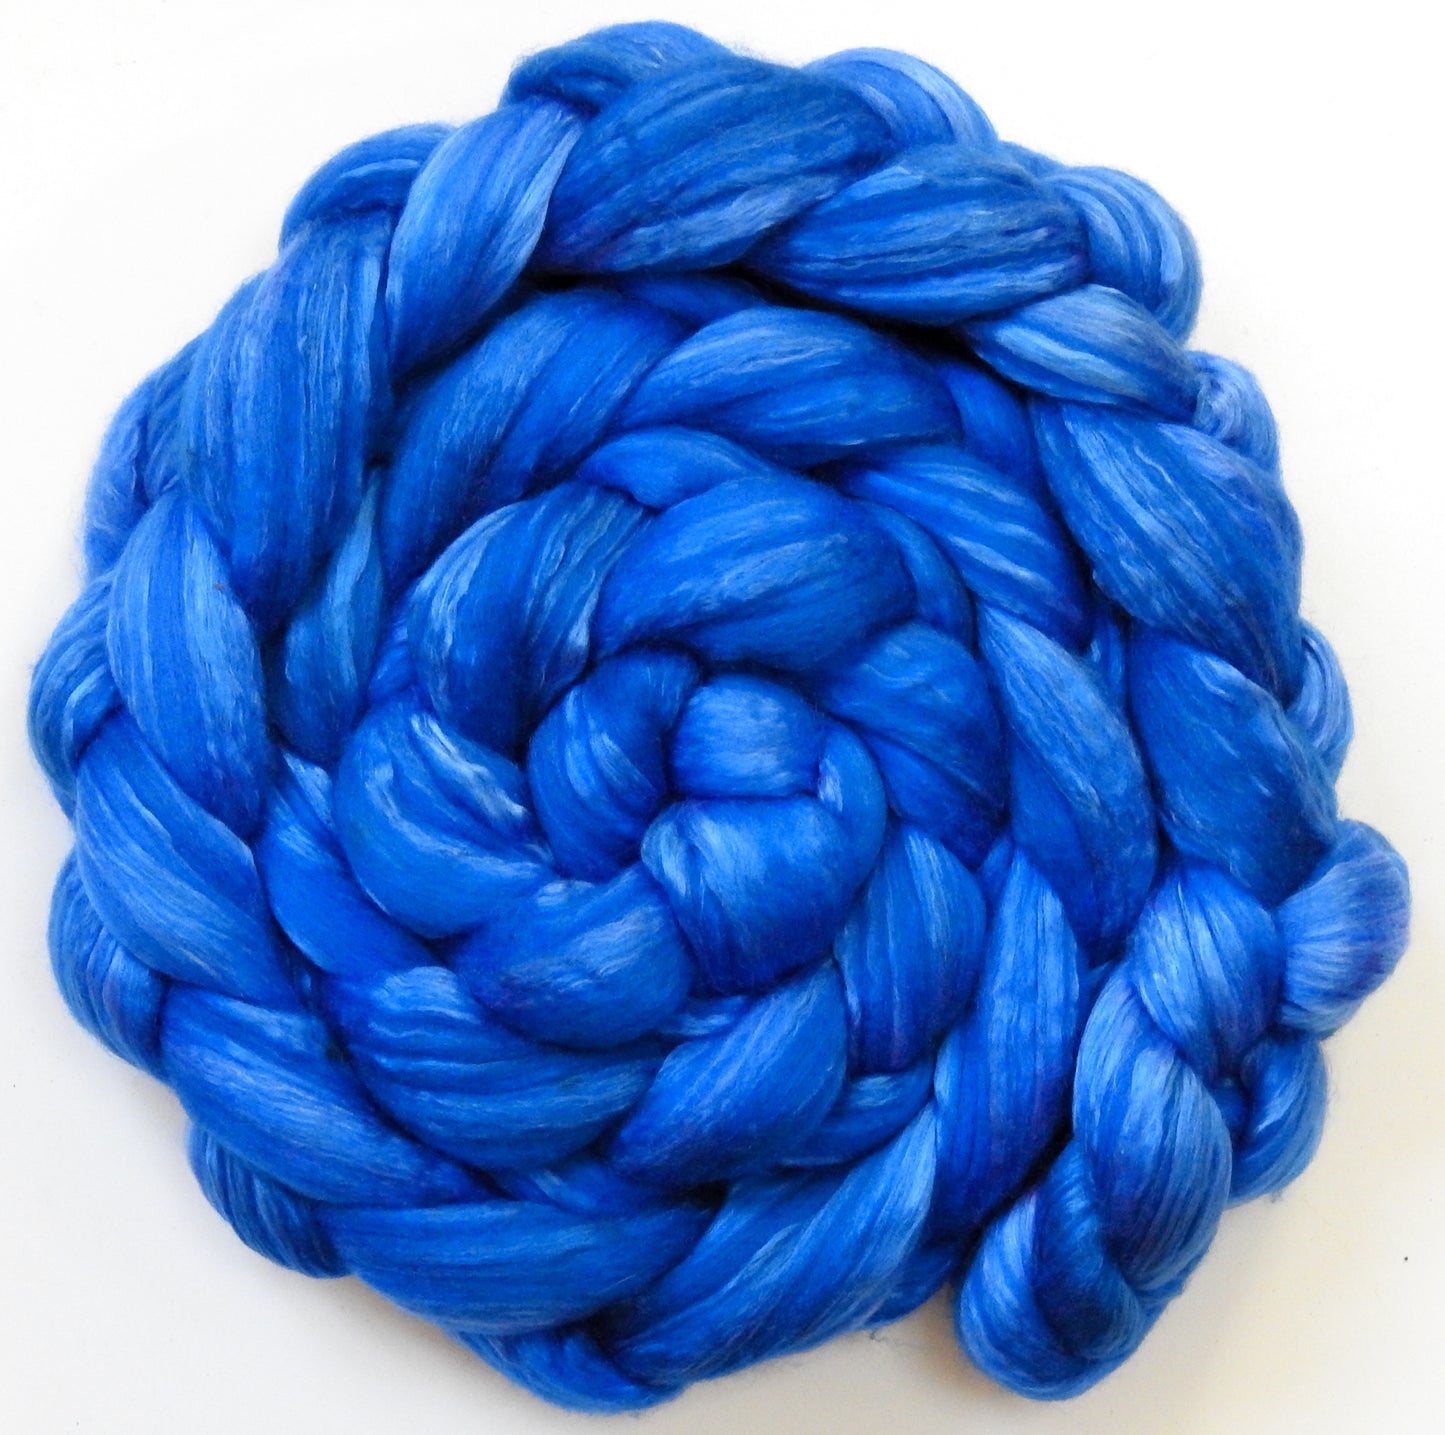 Delft Blue (5.7 oz) - Merino/ Mulberry Silk (60/40)